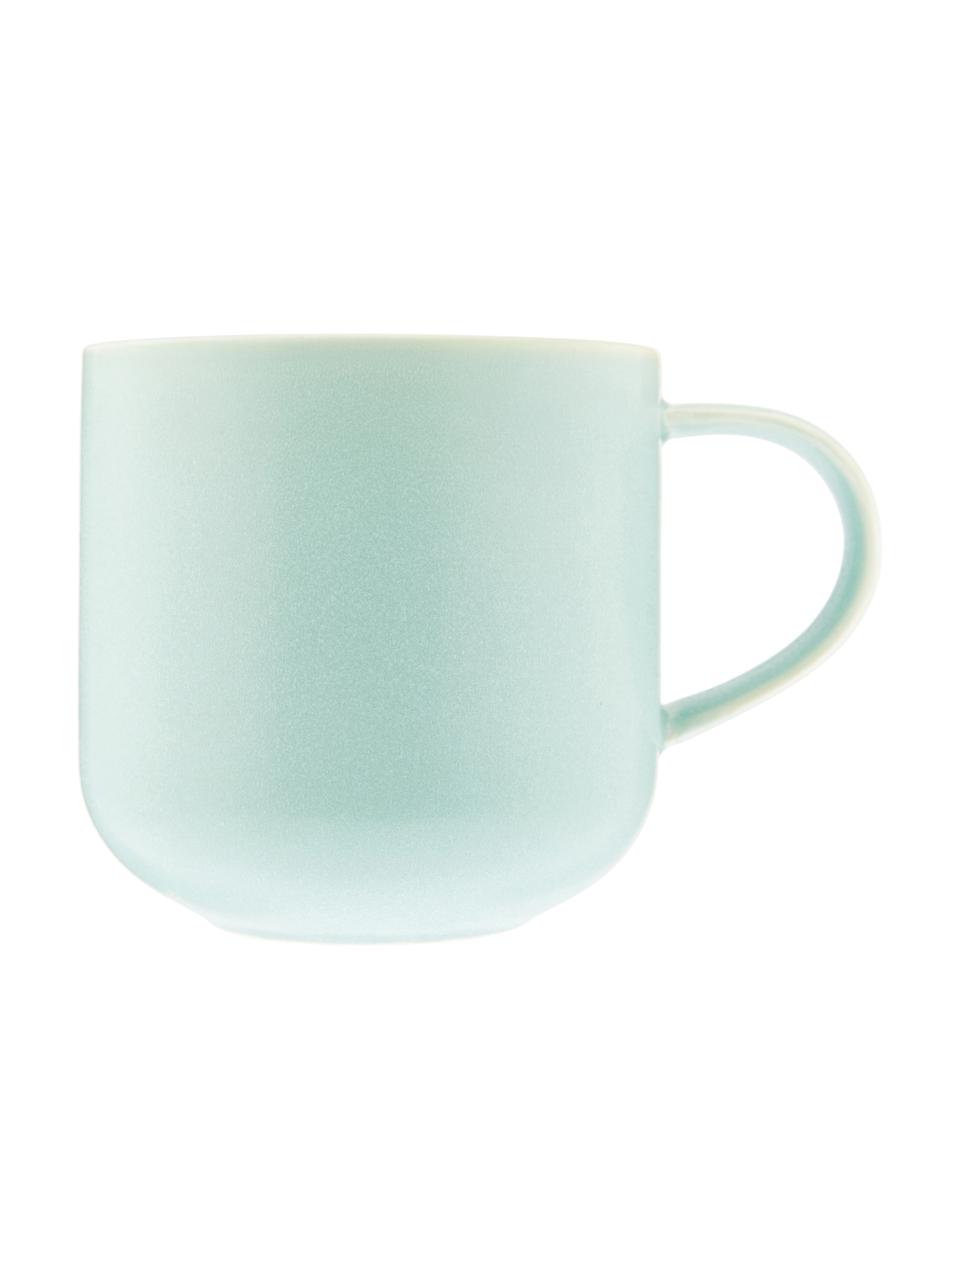 Handgemachte Tassen Coppa in Mintgrün gesprenkelt, 2 Stück, Porzellan, Mintgrüntöne, 400 ml